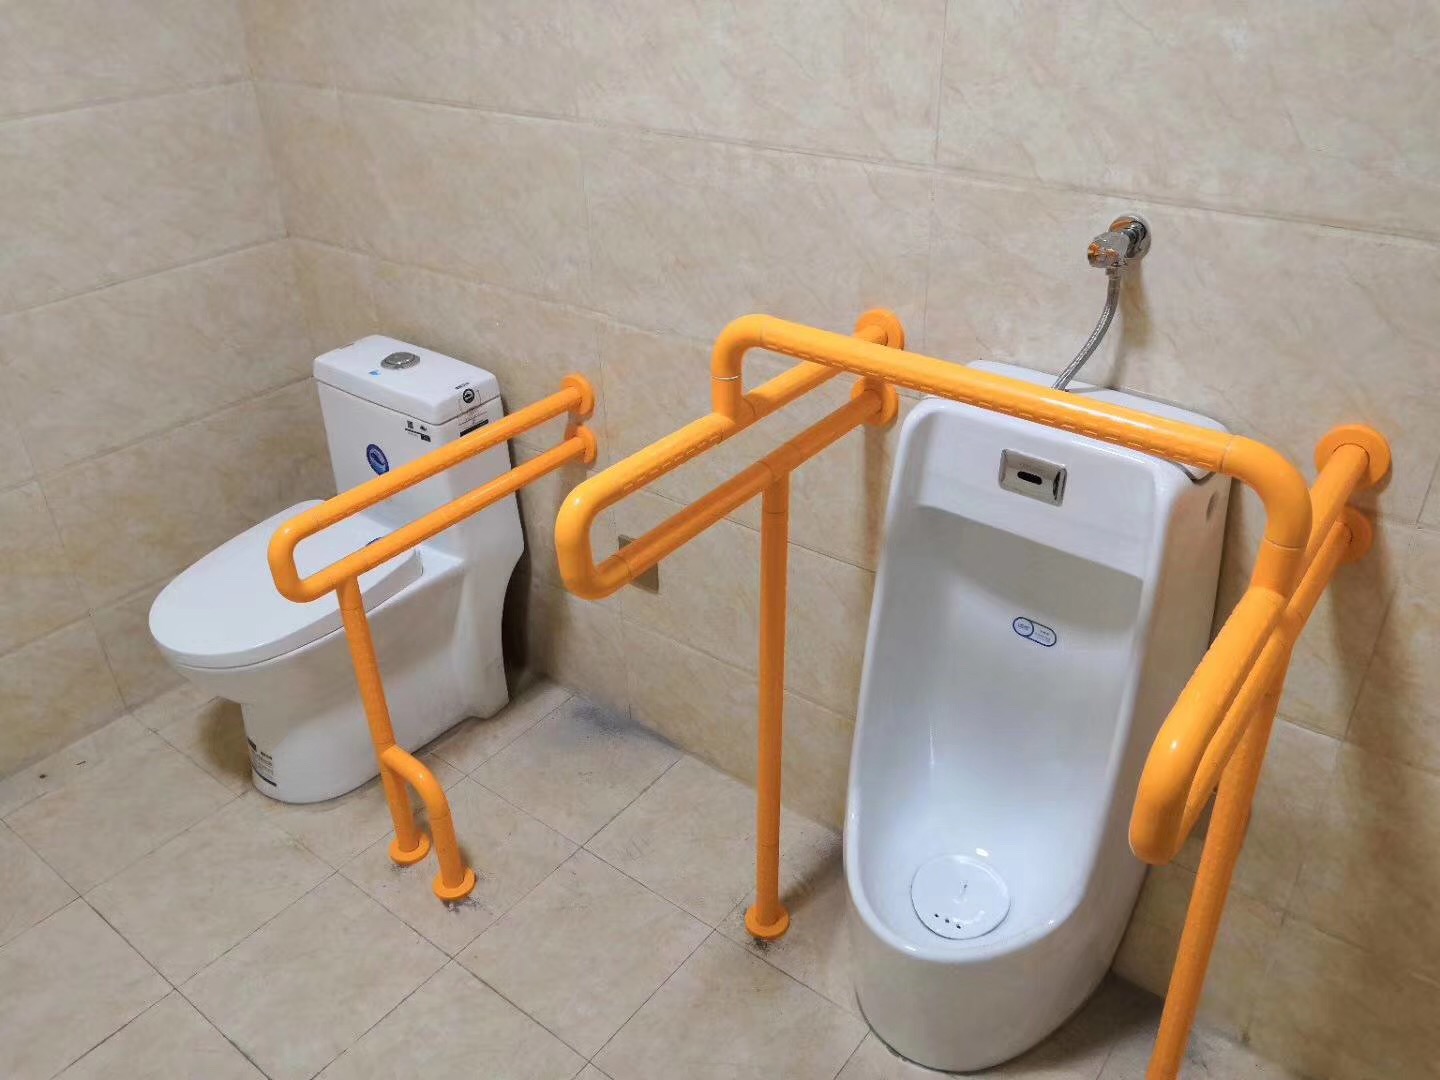 Barra de agarre de baño antideslizante de acero inoxidable para personas discapacitadas Barandilla de bañera de edad avanzada Manija de seguridad Barras de agarre de reposabrazos de WC